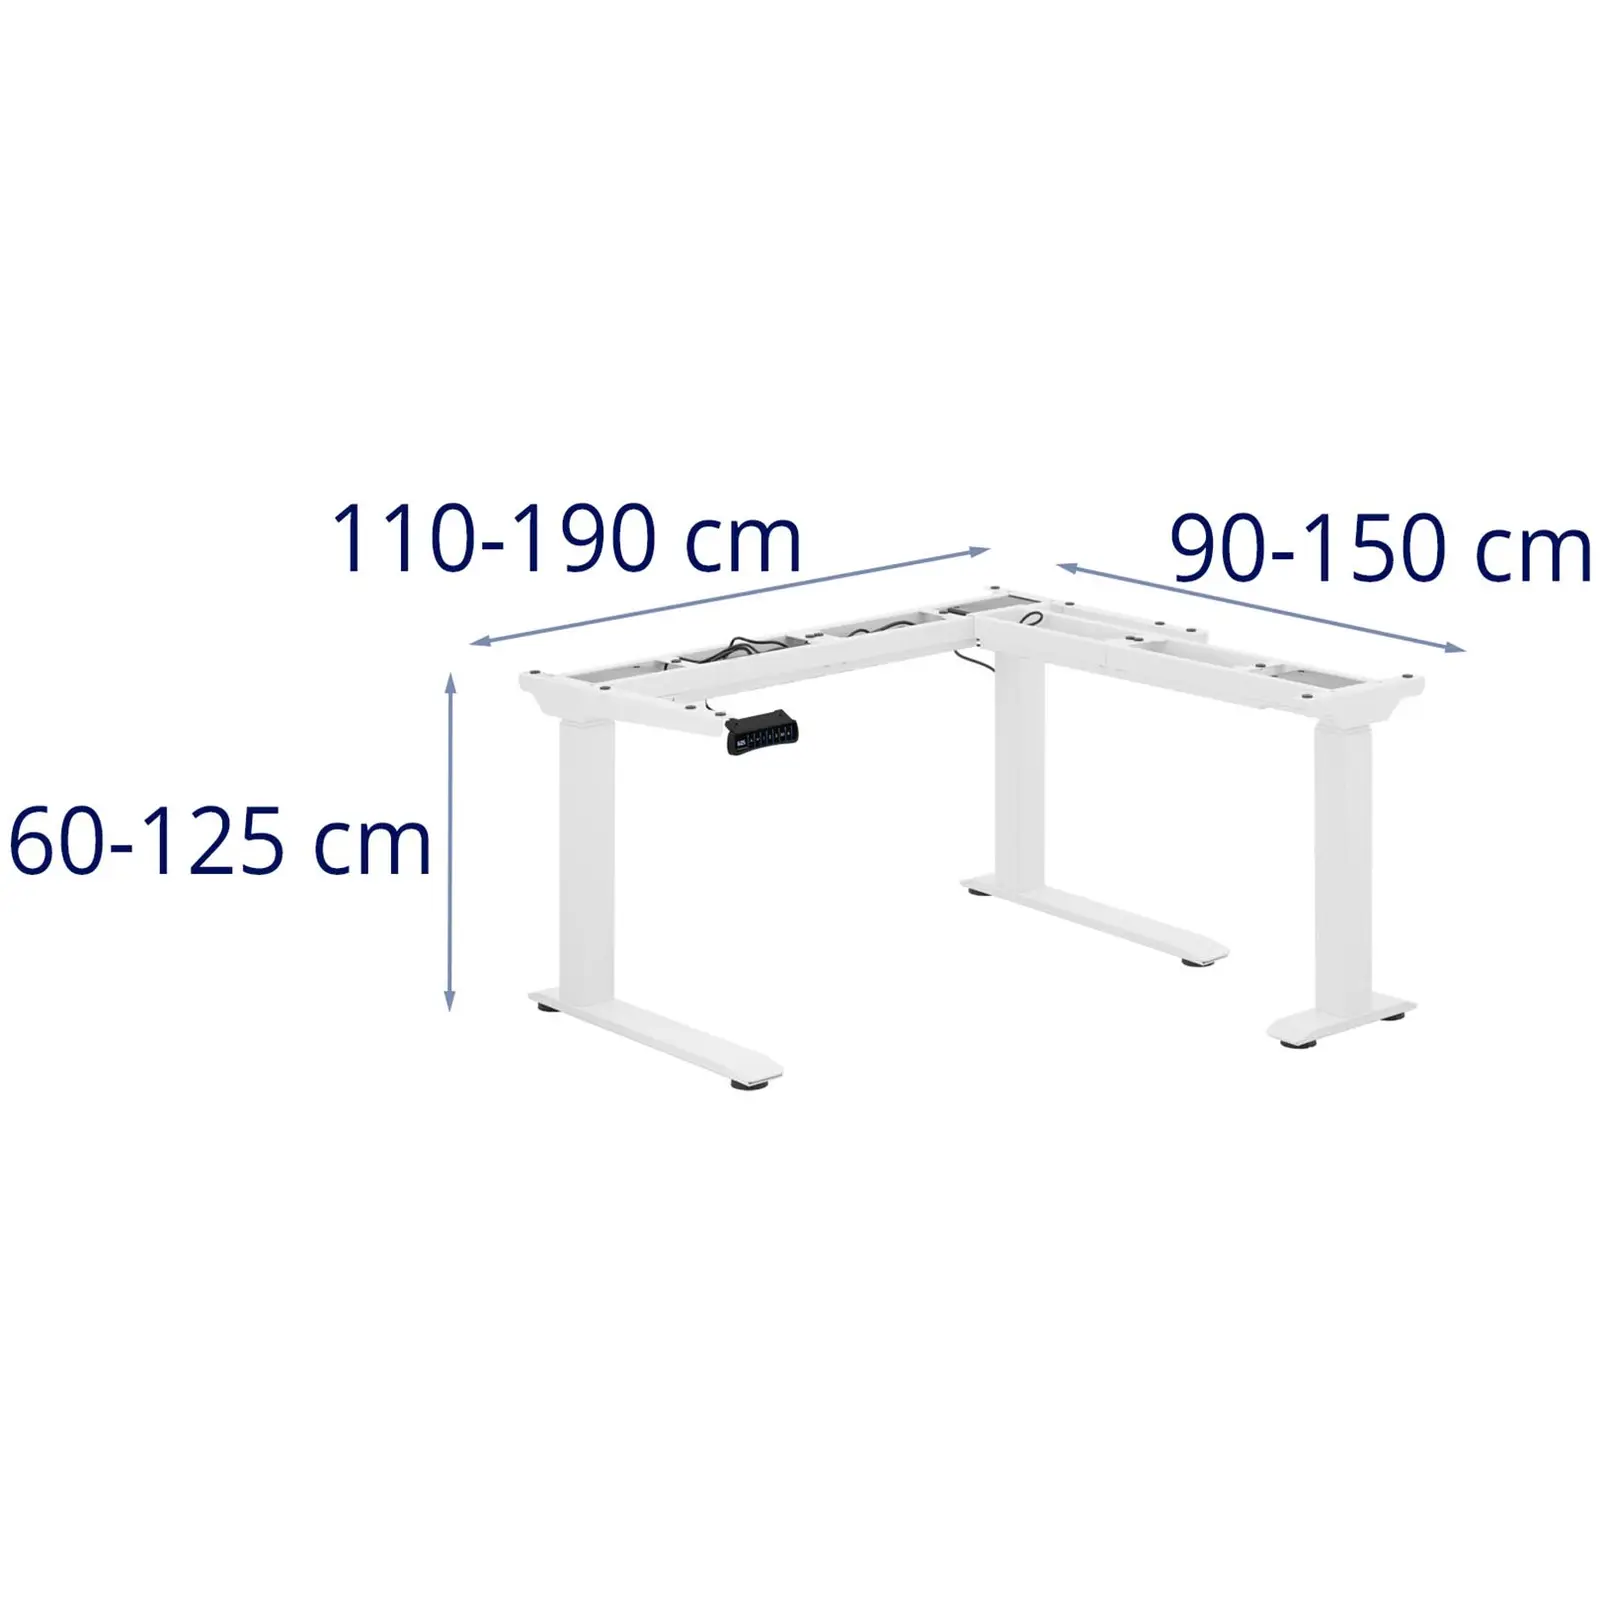 Stelaż pod biurko - wysokość: 60-125 cm - szerokość: 110-190 cm (po lewej) / 90-150 cm (po prawej)